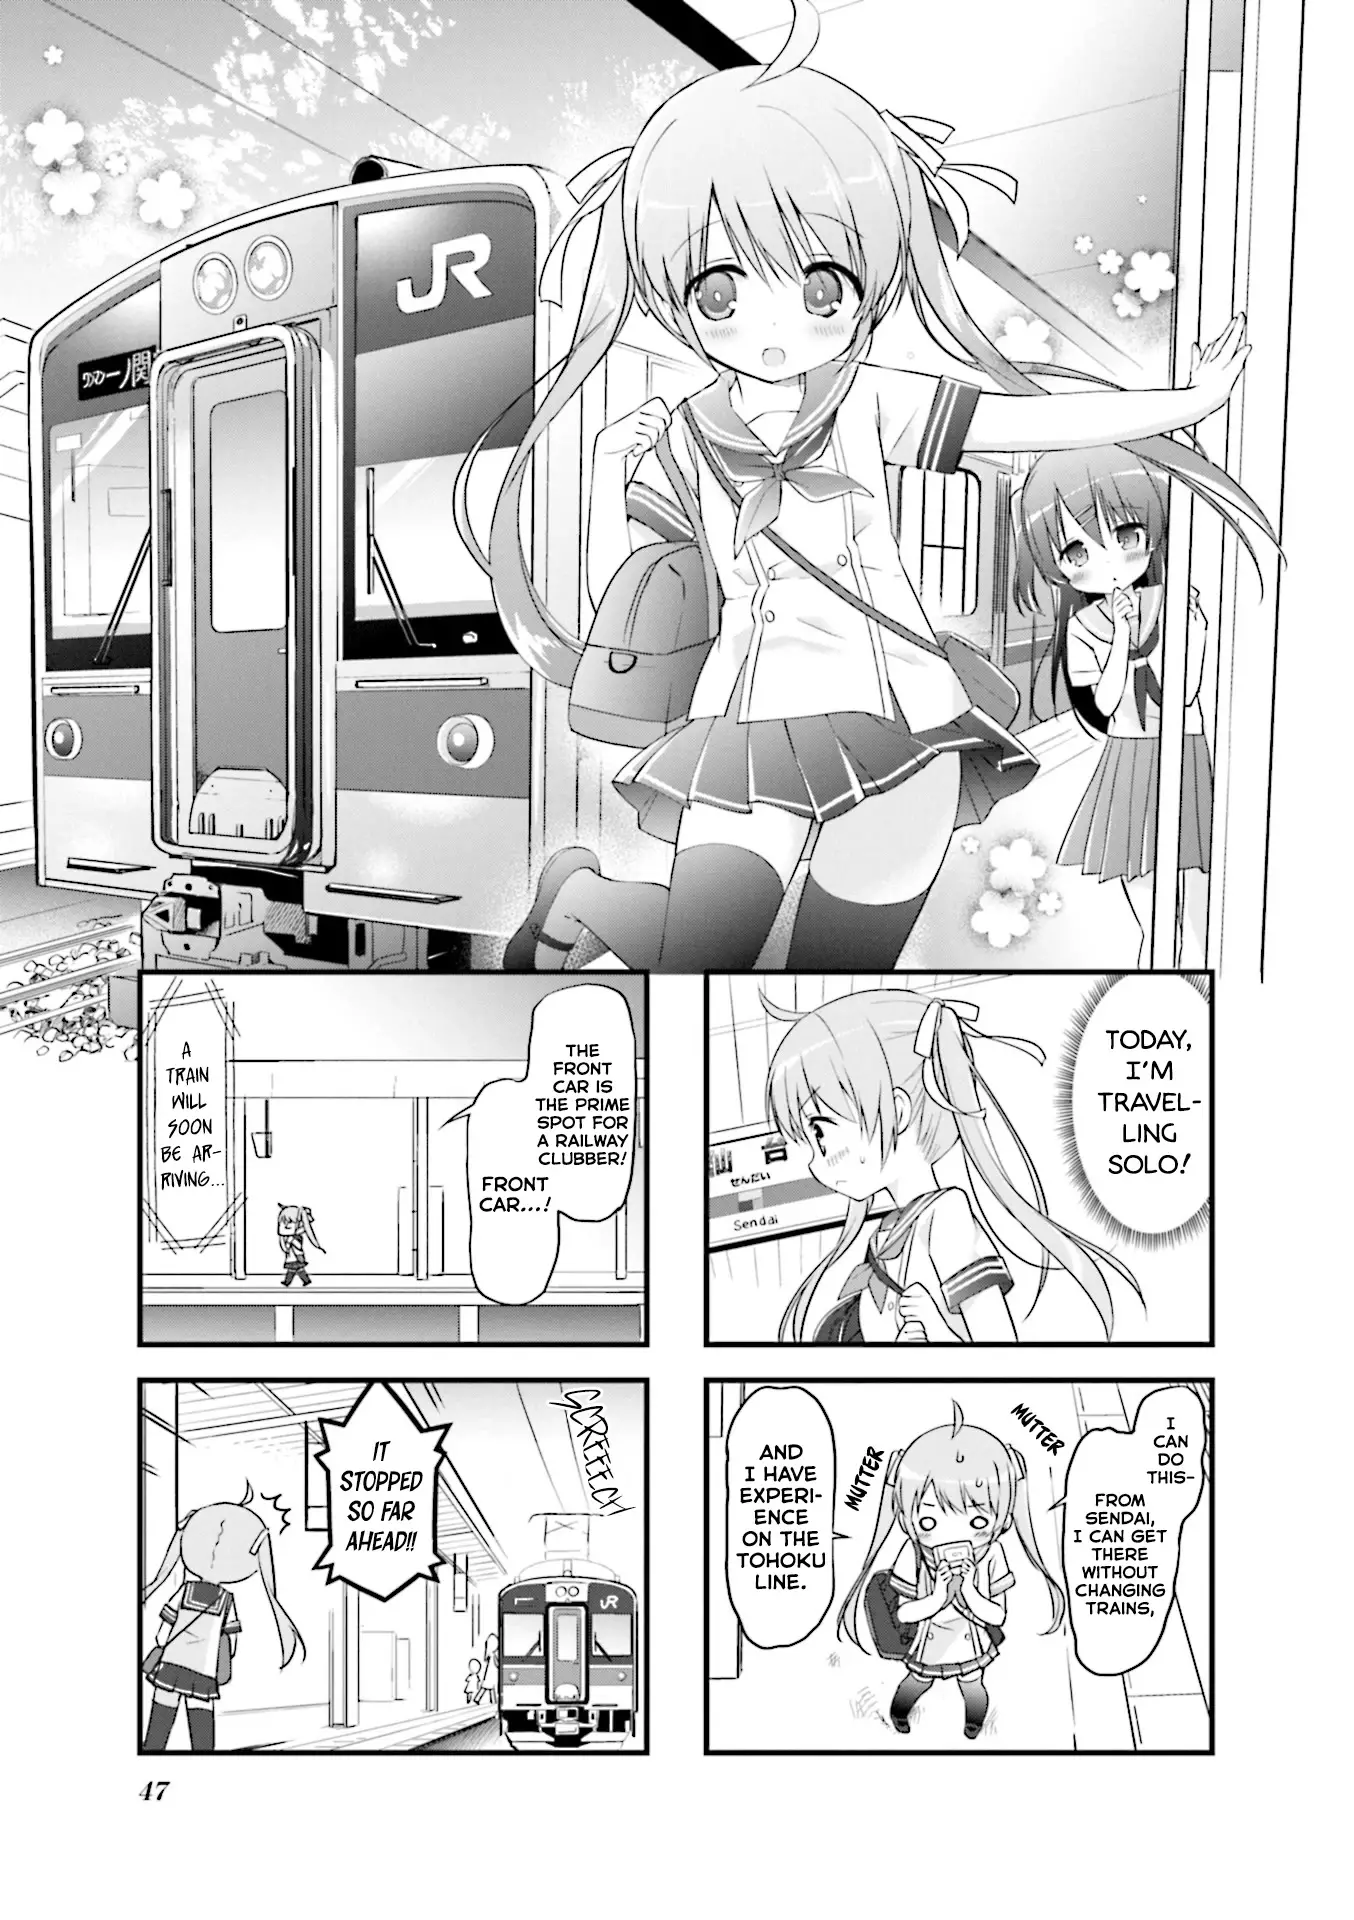 Hatsukoi*rail Trip - 19 page 1-54300793